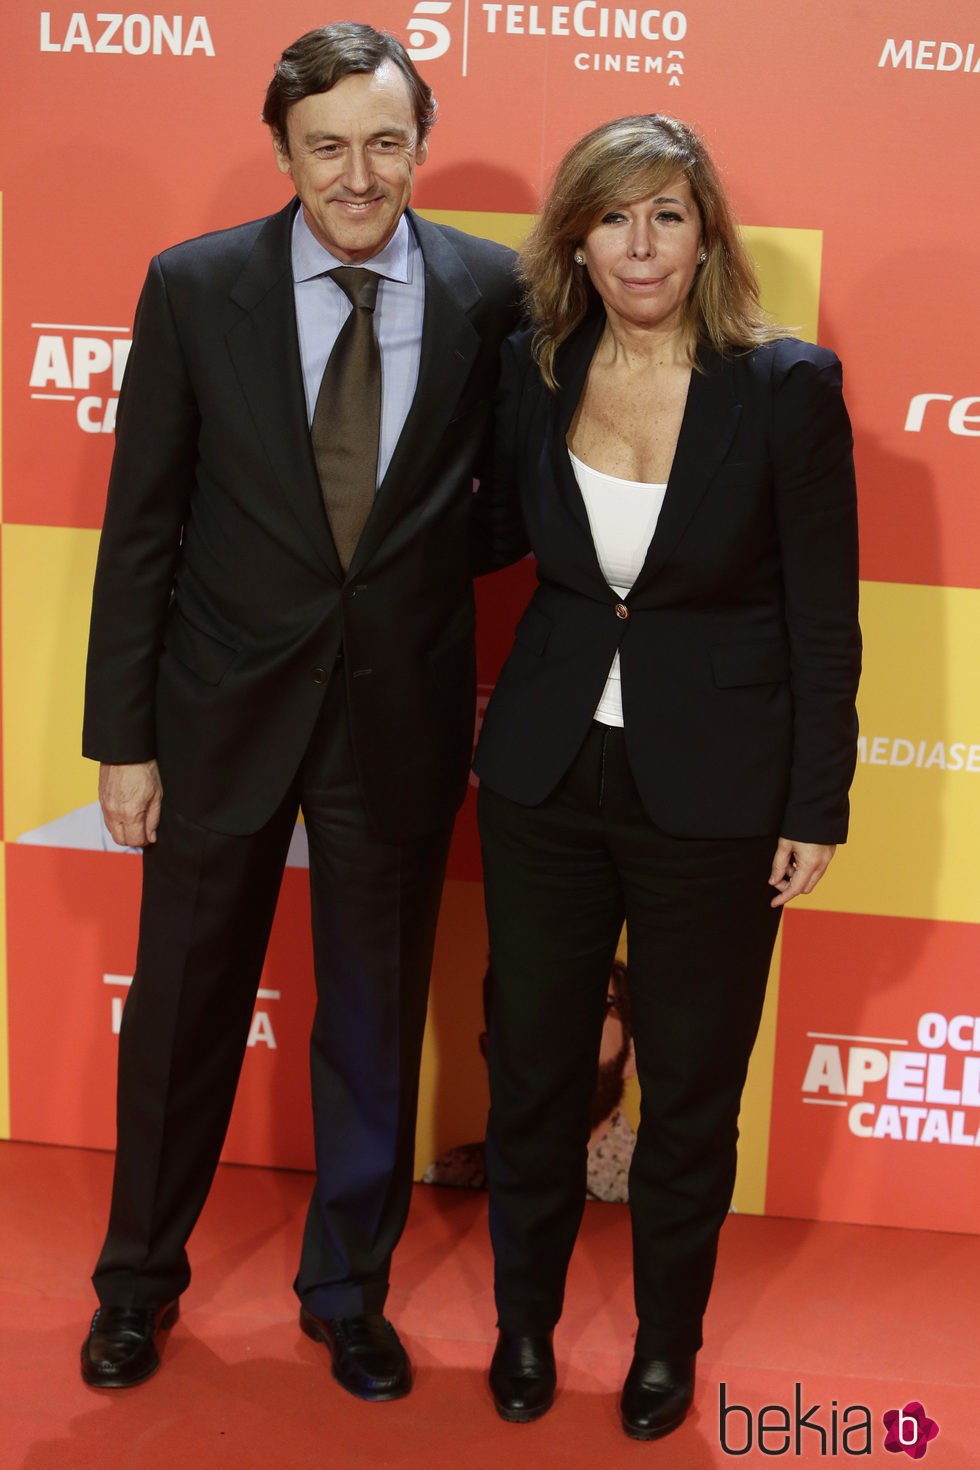 Rafael Hernando y Alicia Sánchez Camacho en la premiere de 'Ocho Apellidos Catalanes'